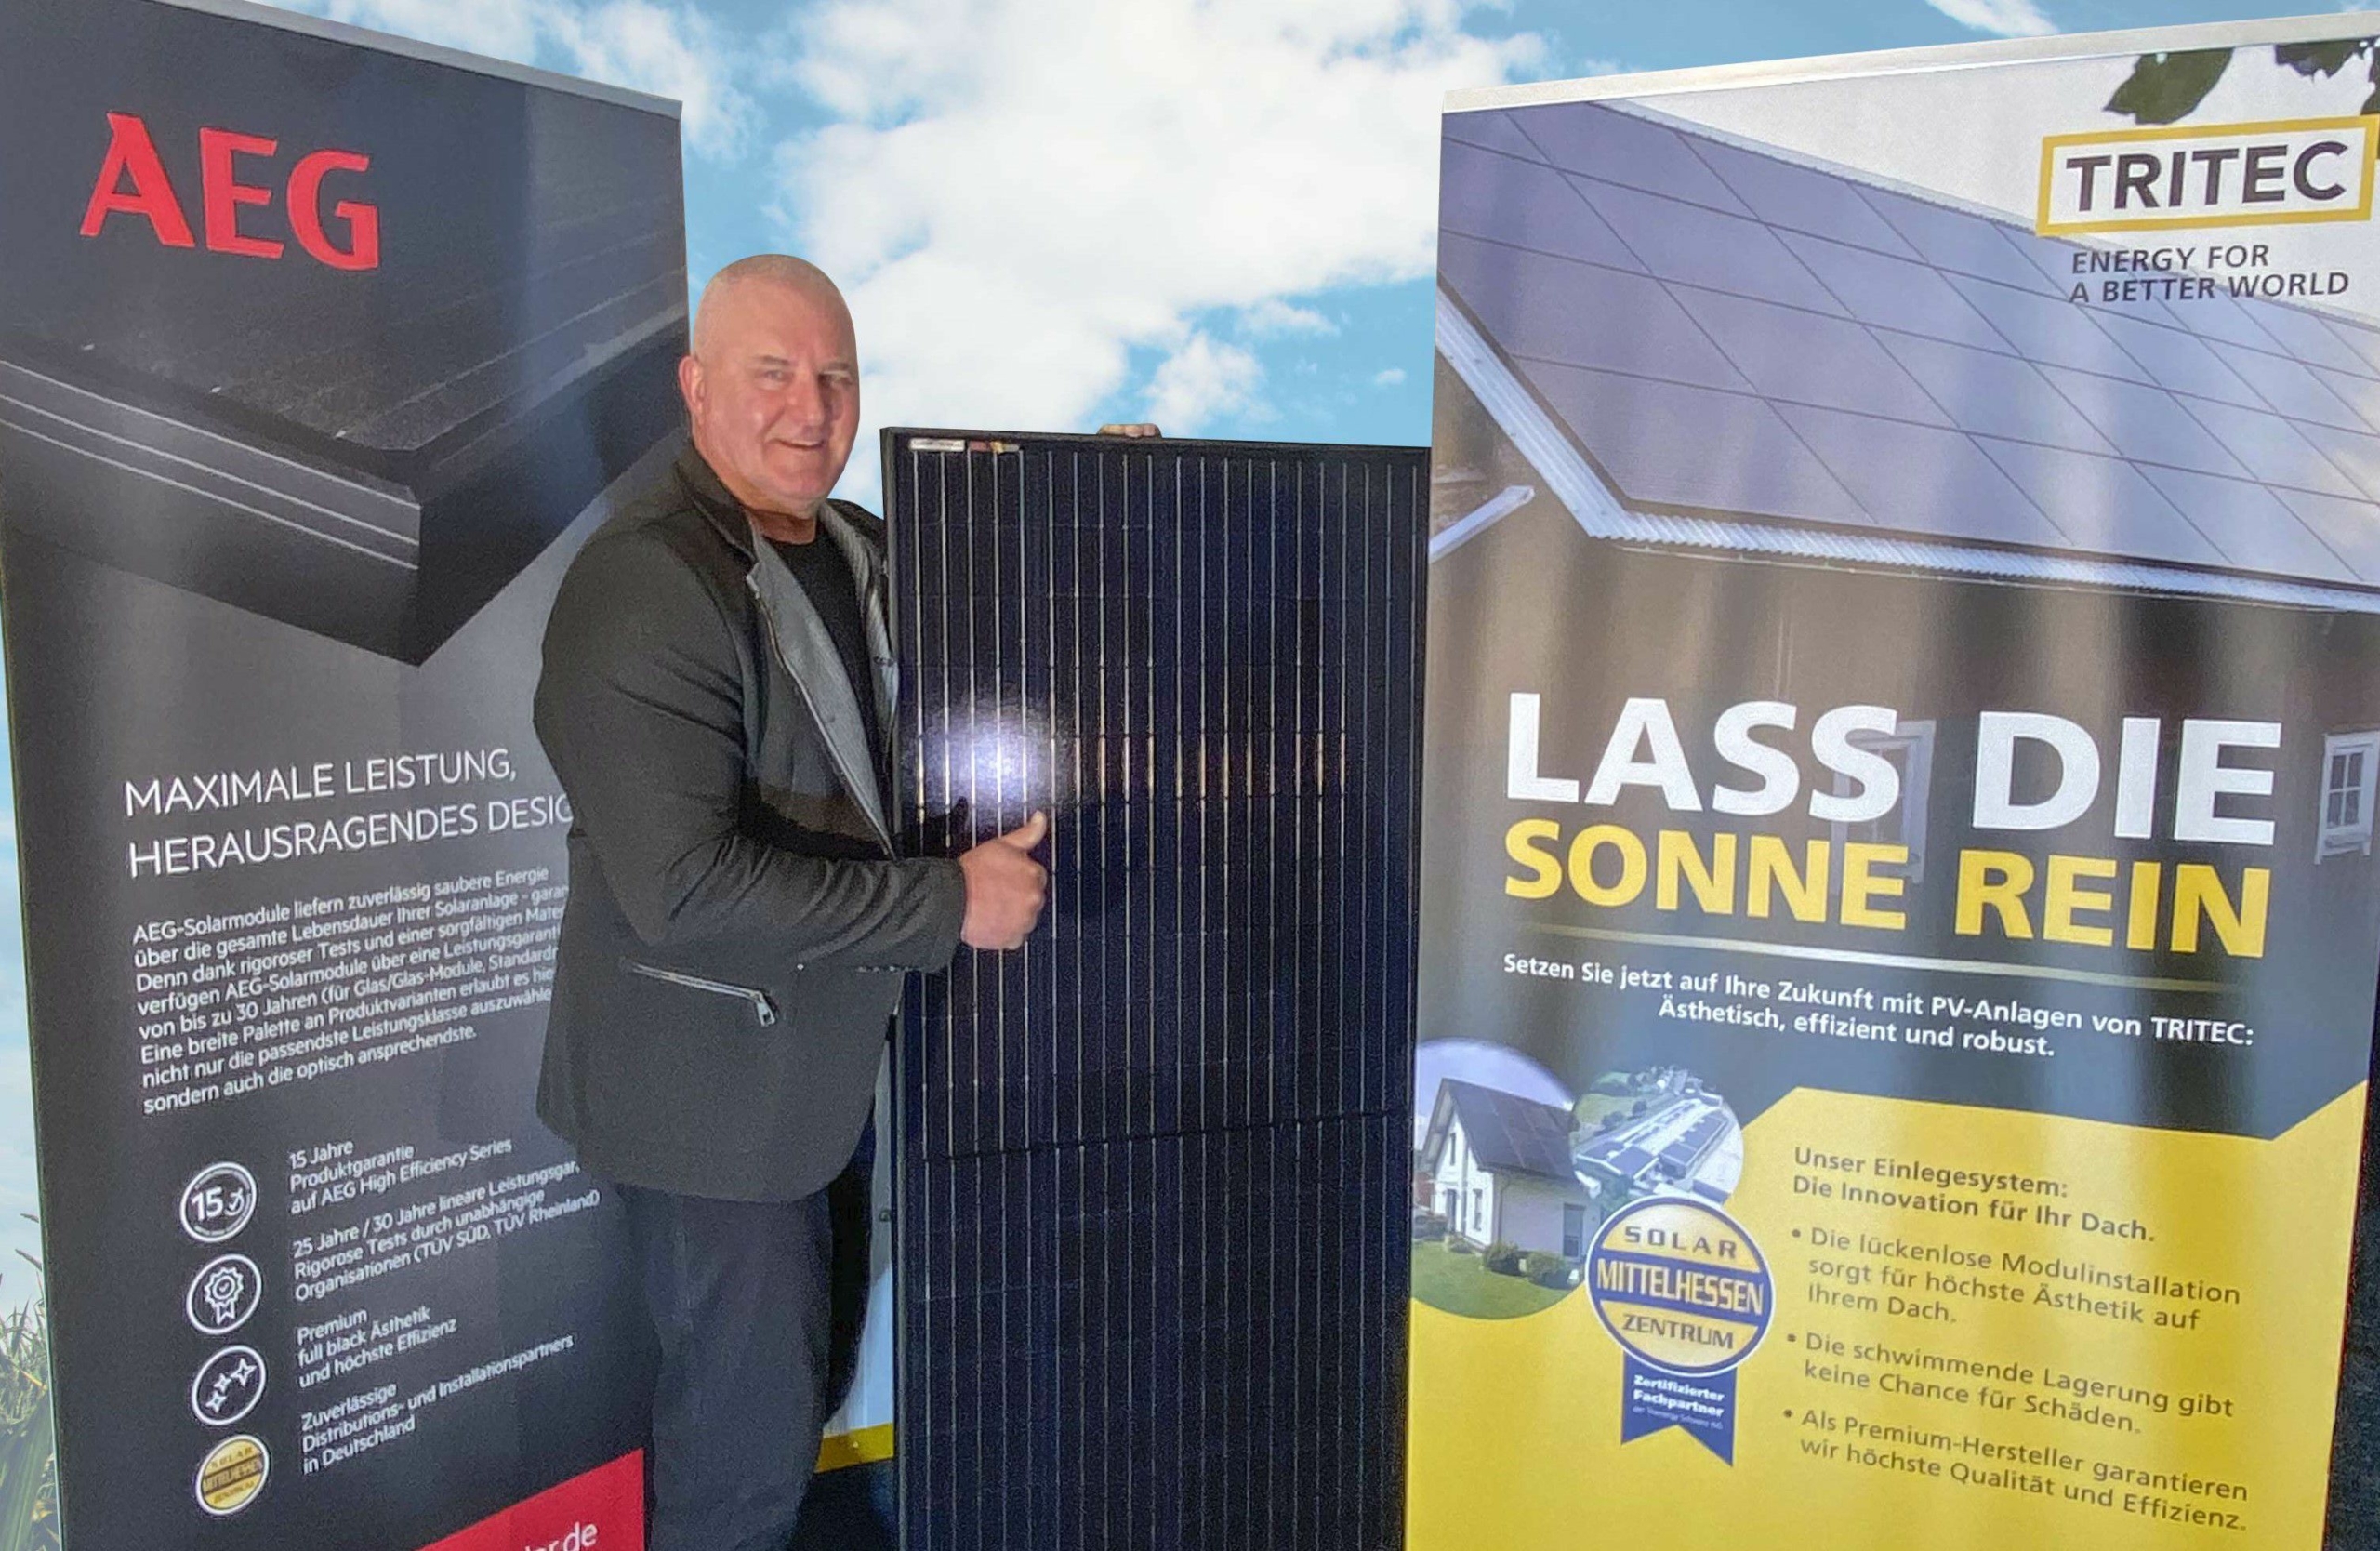 New sales partner: Solarzentrum-Mittelhessen GmbH 1